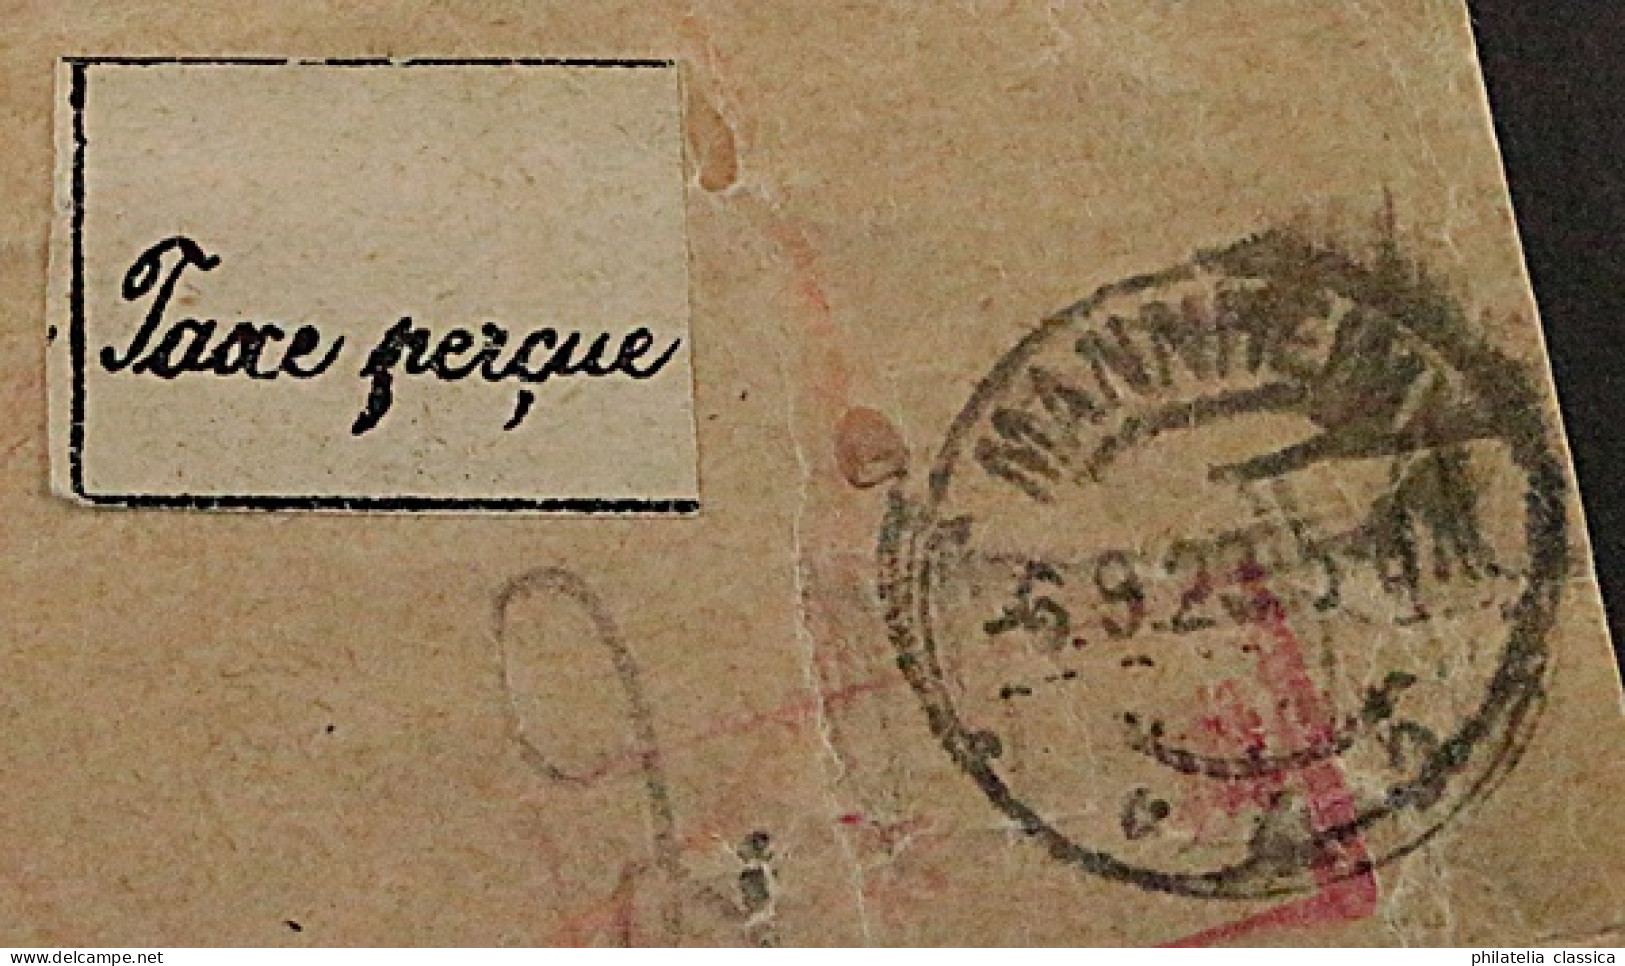 1923, MANNHEIM 4 Gebührenzettel Auf Auslands-Brief Nach BASEL Sehr Selten 700,-€ - 1922-1923 Emissions Locales